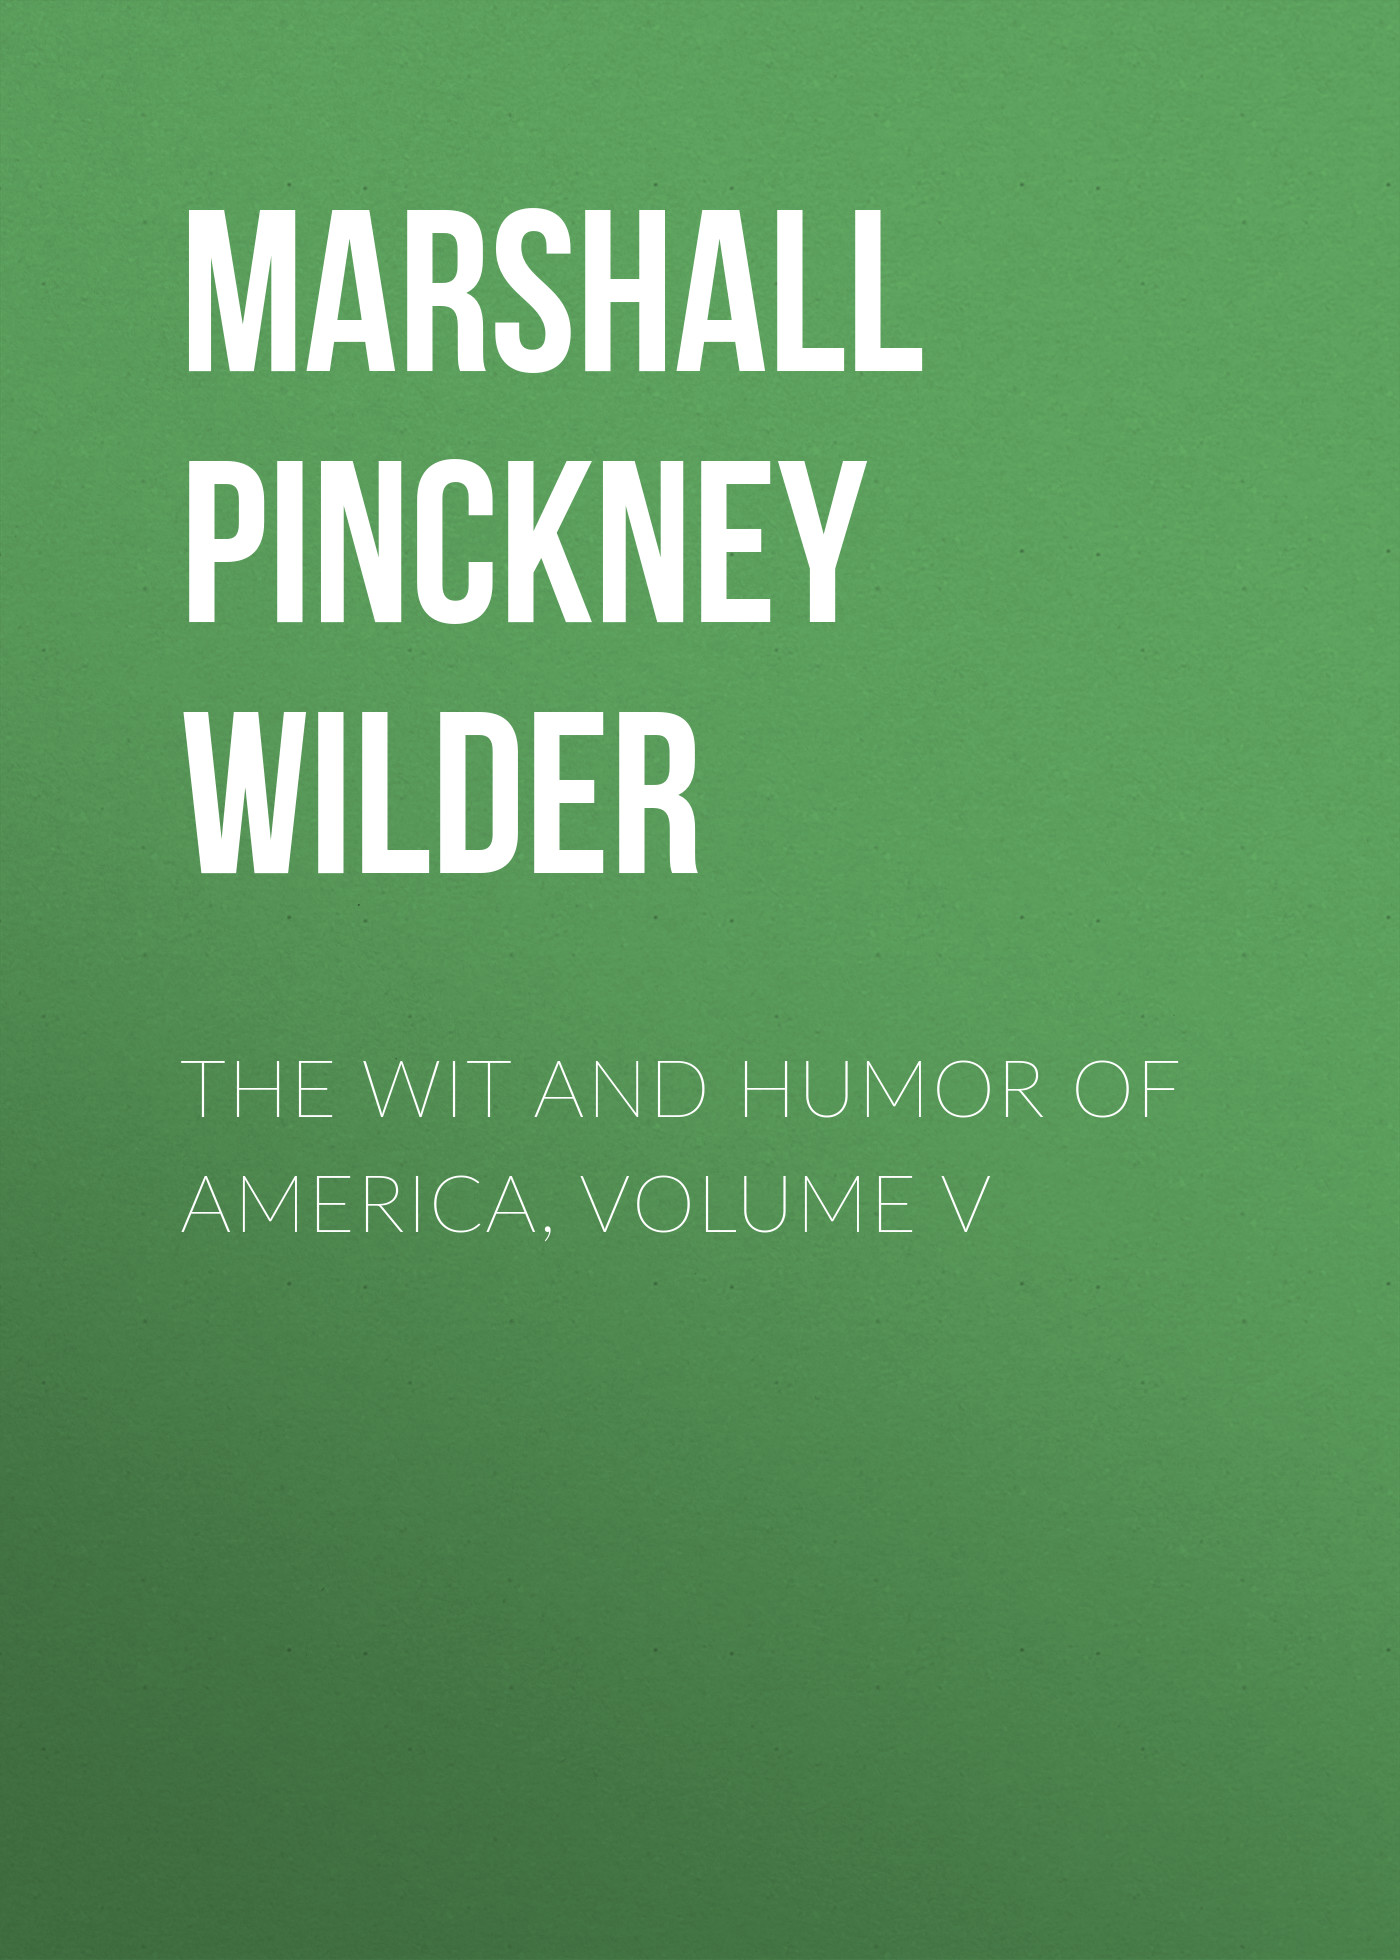 Книга The Wit and Humor of America, Volume V из серии , созданная Marshall Pinckney Wilder, может относится к жанру Зарубежный юмор, Юмор: прочее, Зарубежная психология. Стоимость электронной книги The Wit and Humor of America, Volume V с идентификатором 36322332 составляет 0 руб.